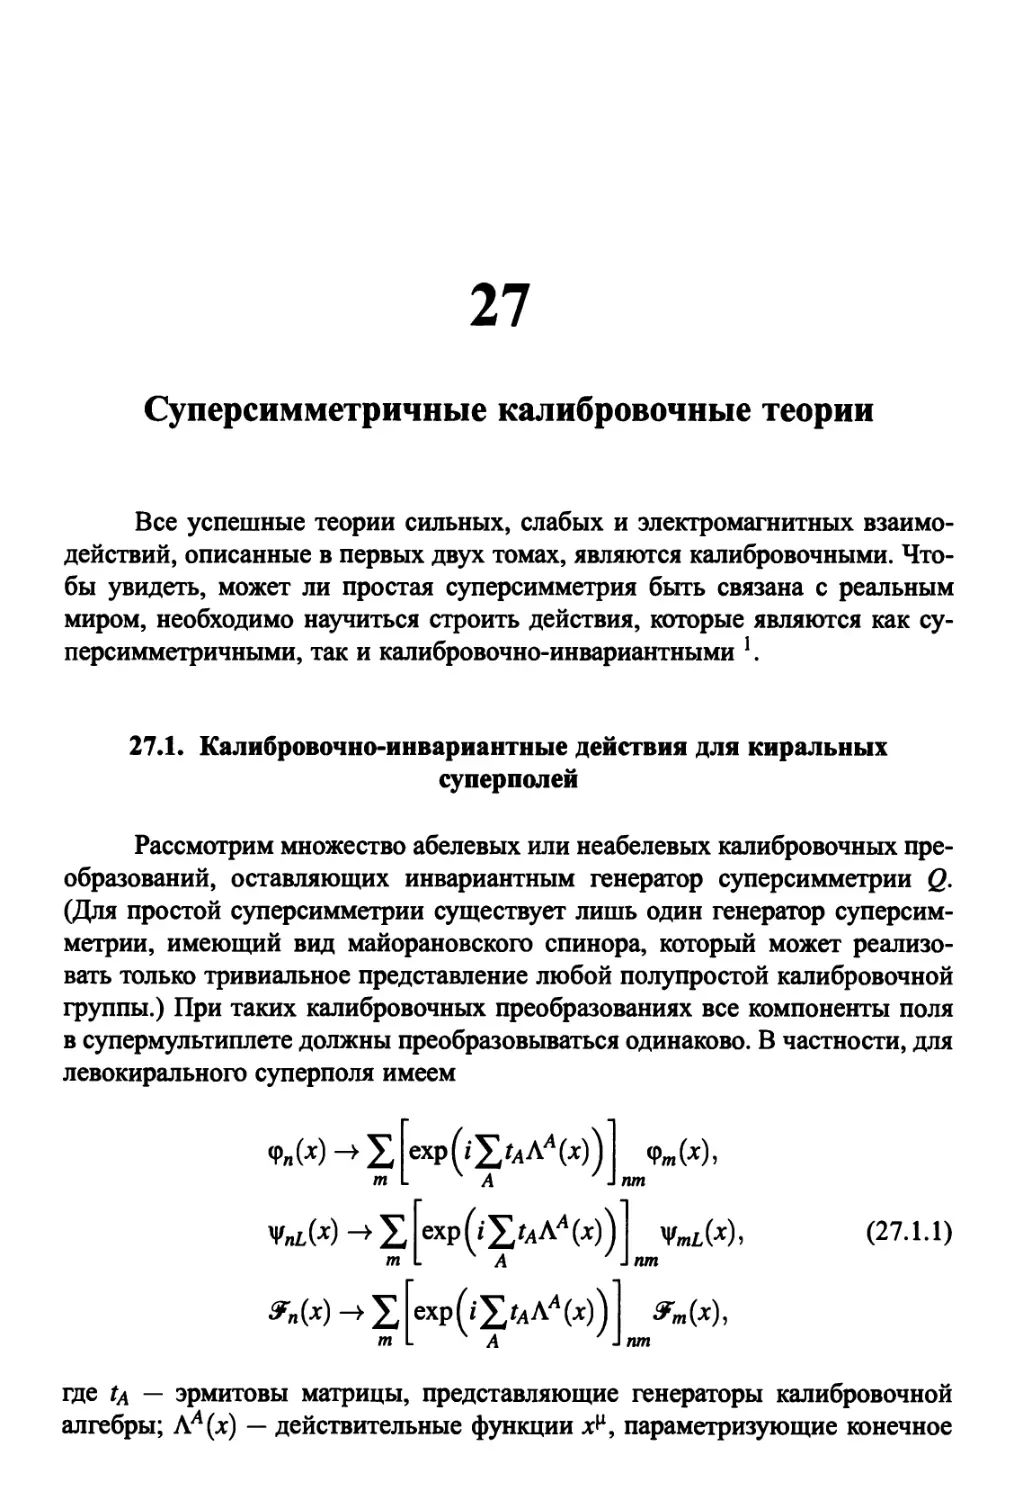 27. Суперсимметричные калибровочные теории